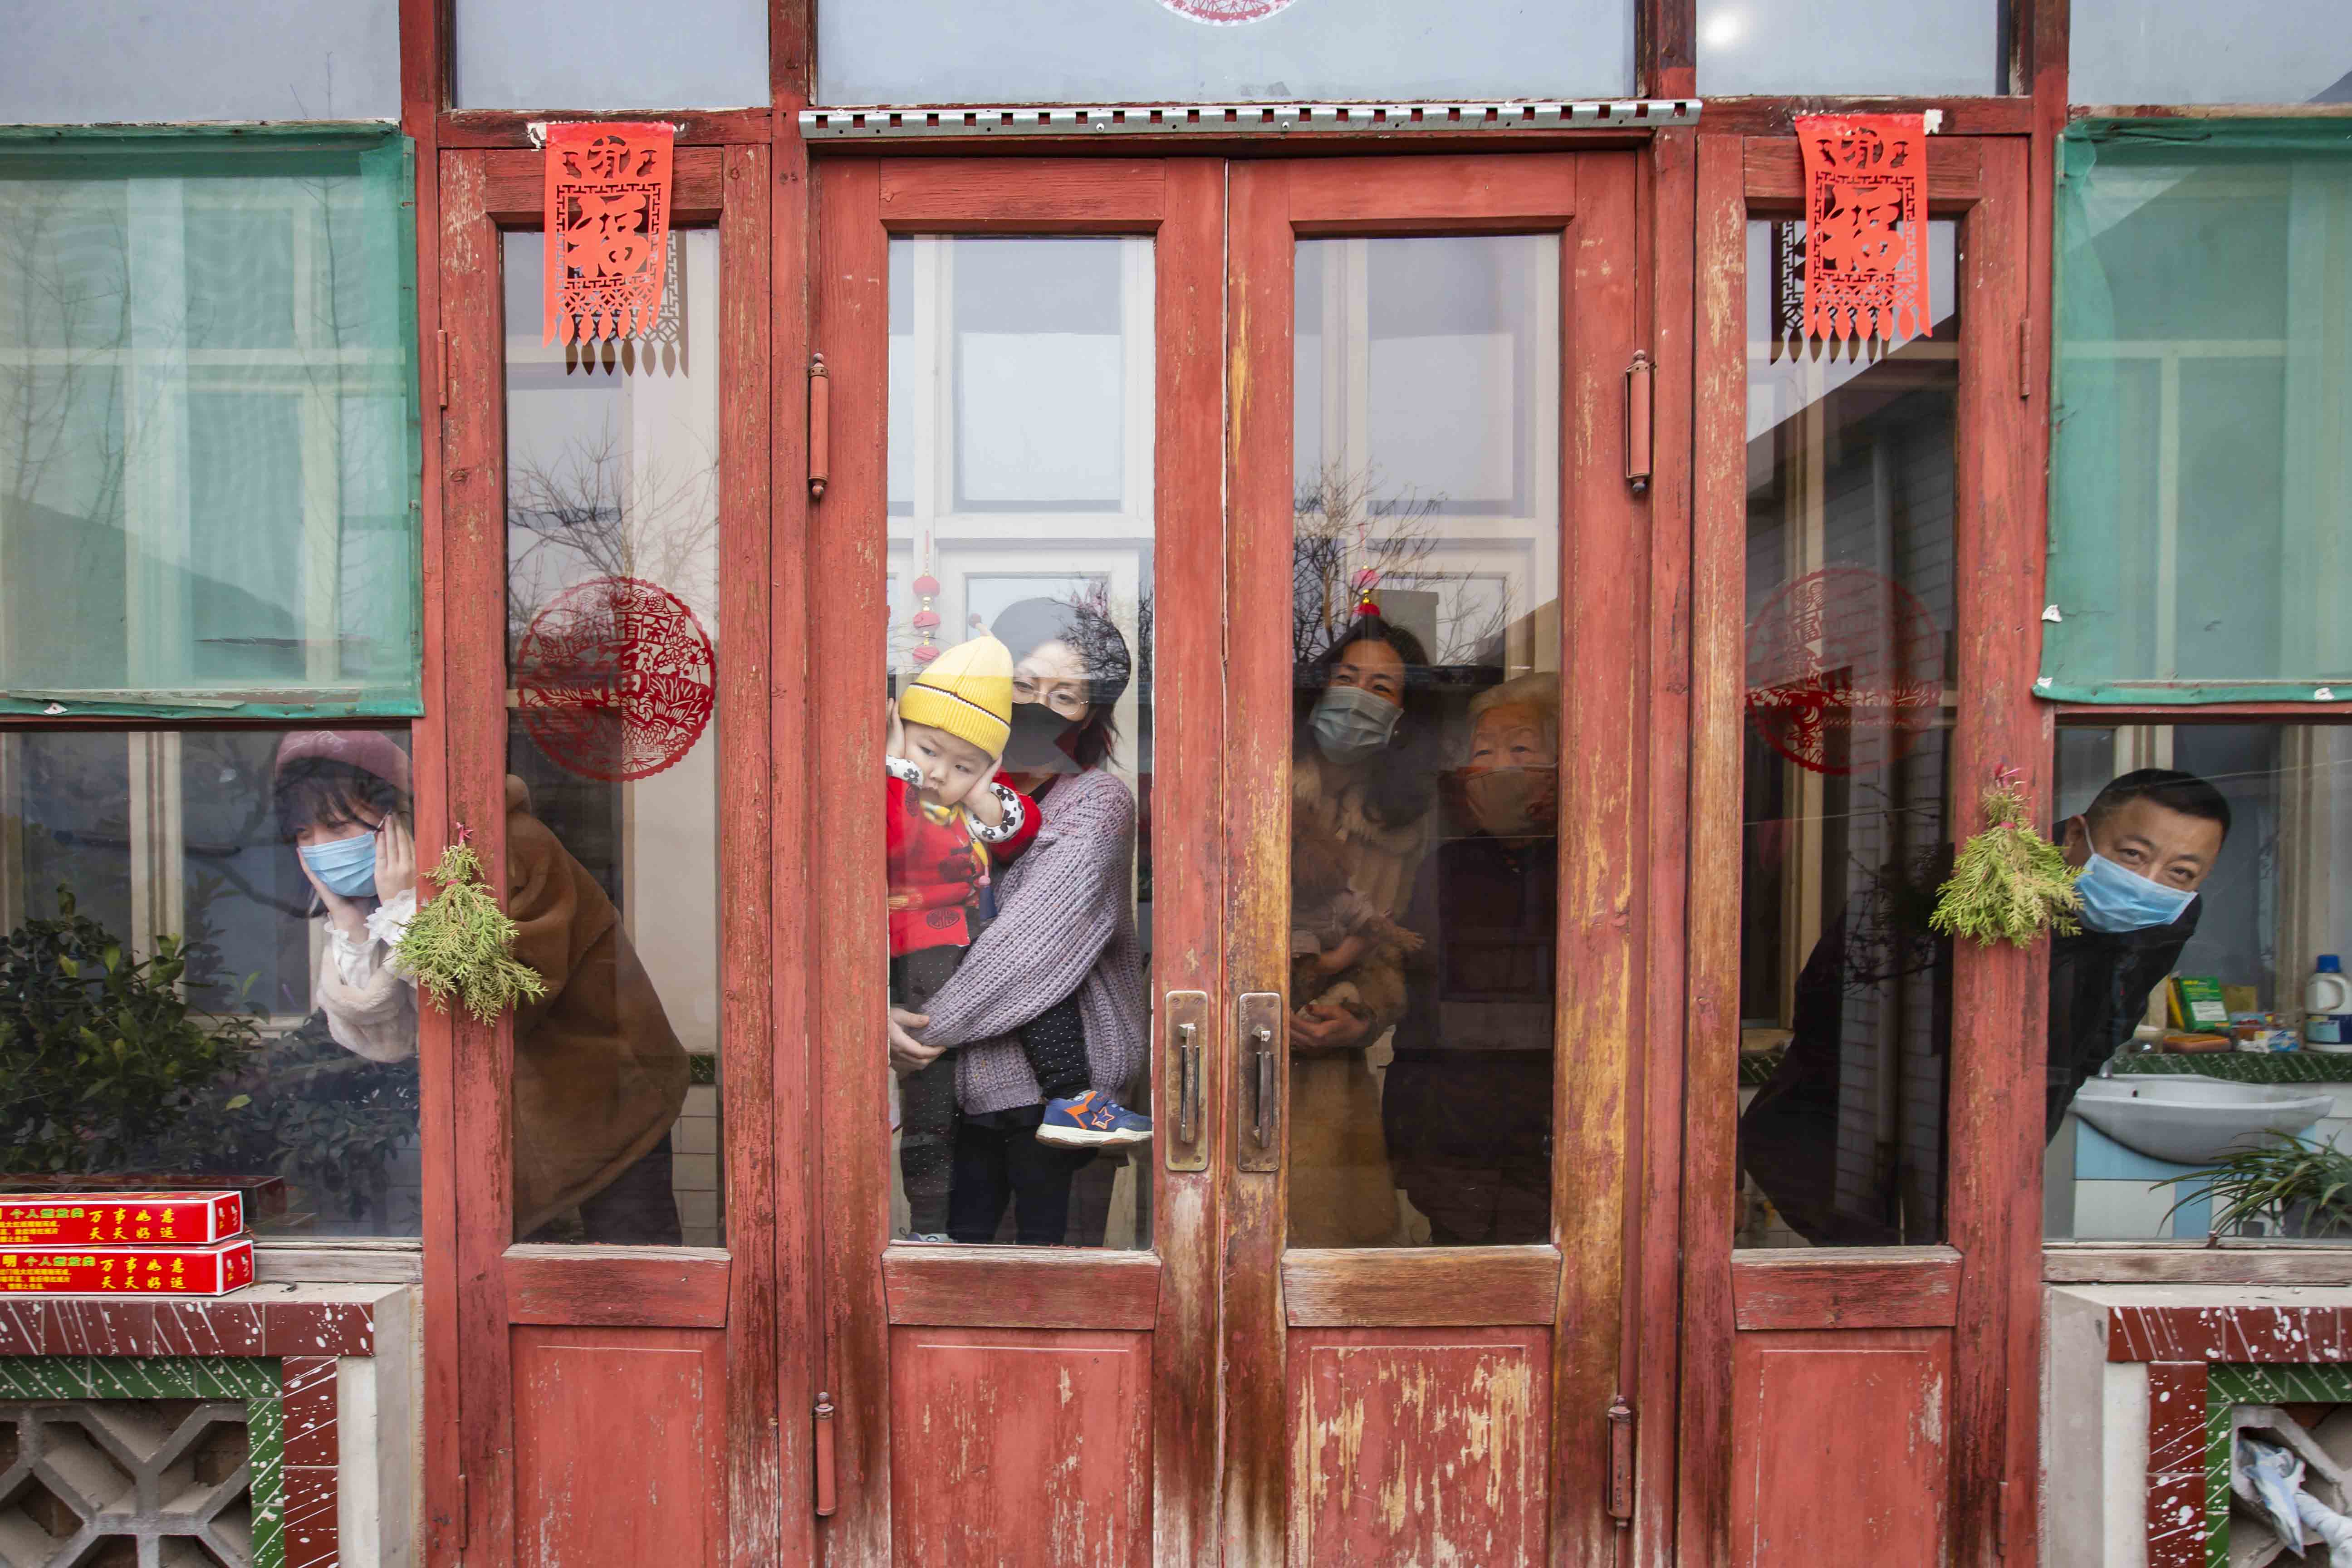 王春和《全家福》-拍摄于1月26日-济南-王春和-13853191266.jpg